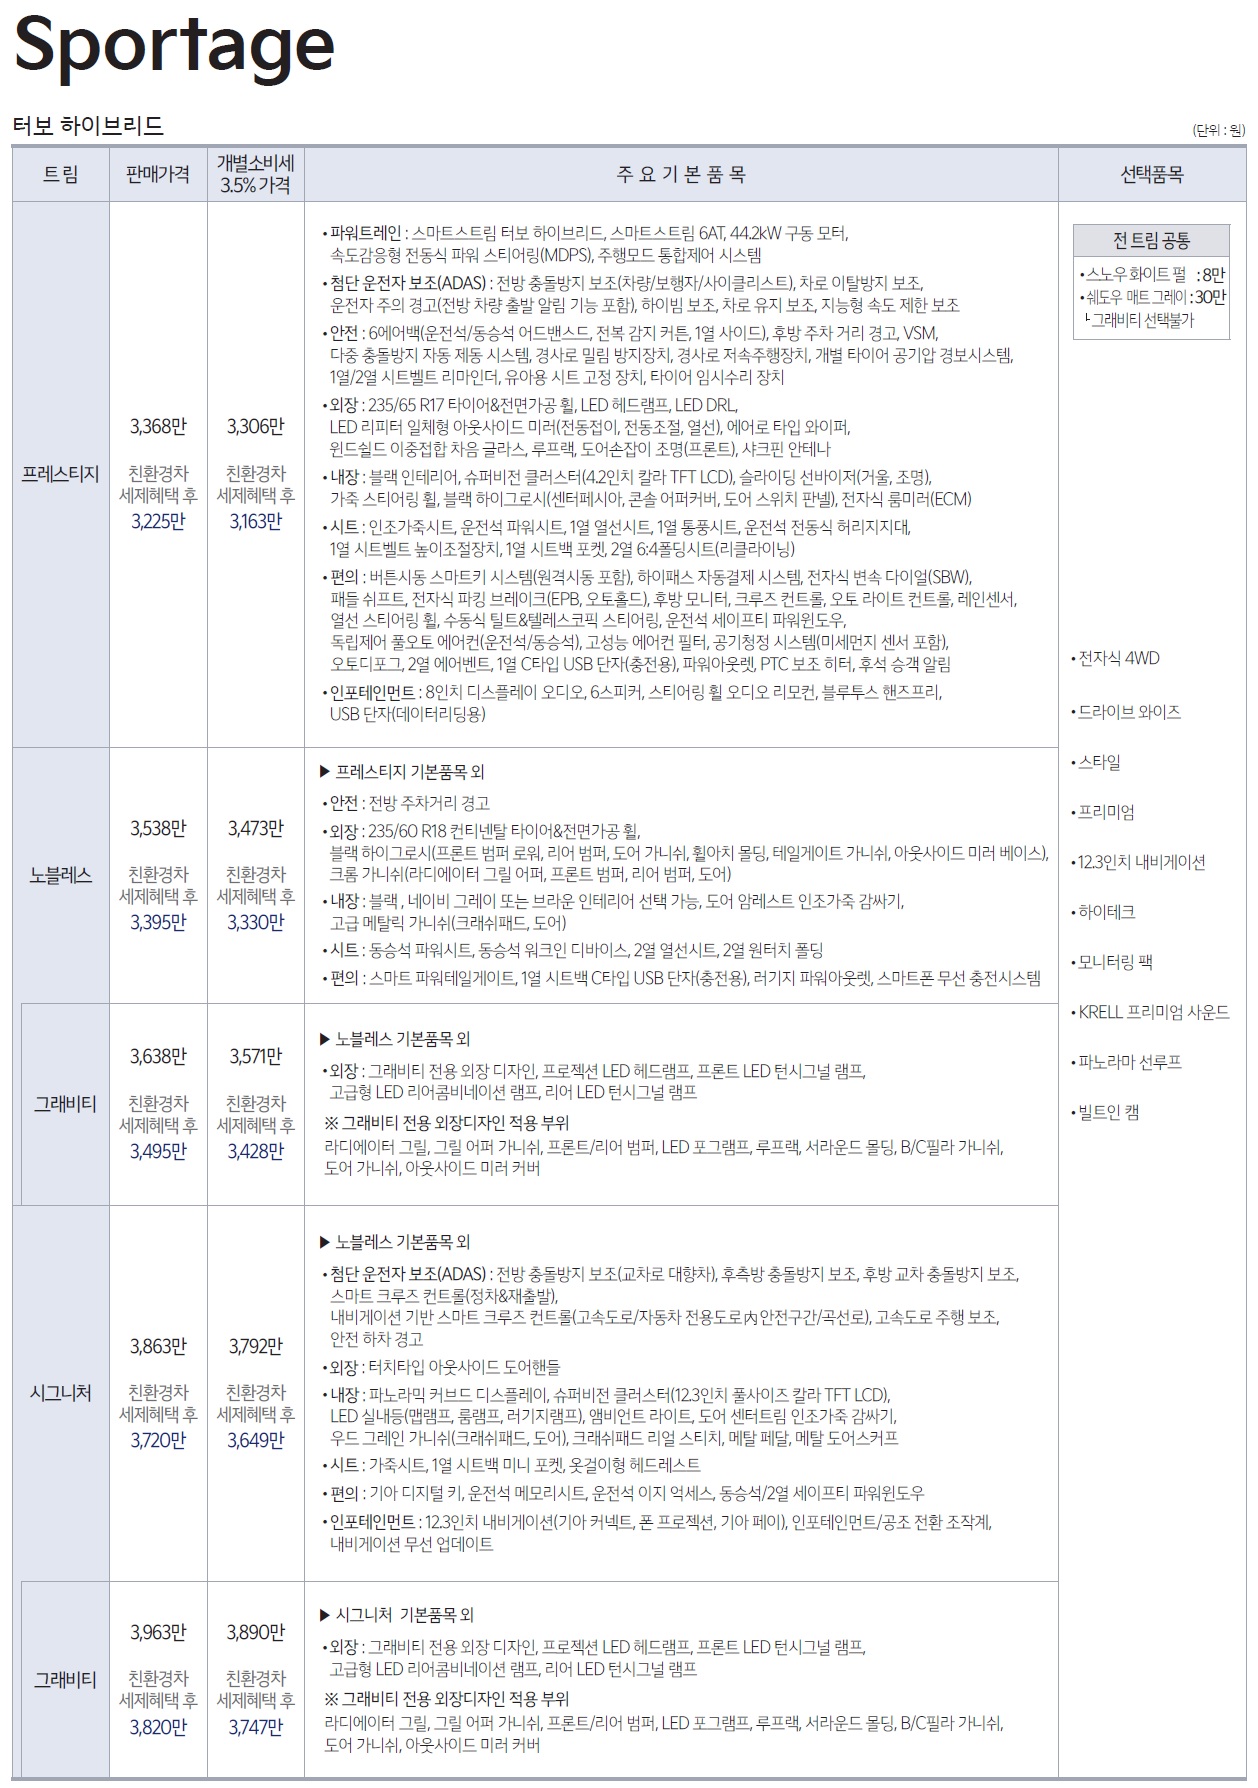 스포티지 하이브리드 가격표 - 2022년 07월 (2023년형) -1.jpg